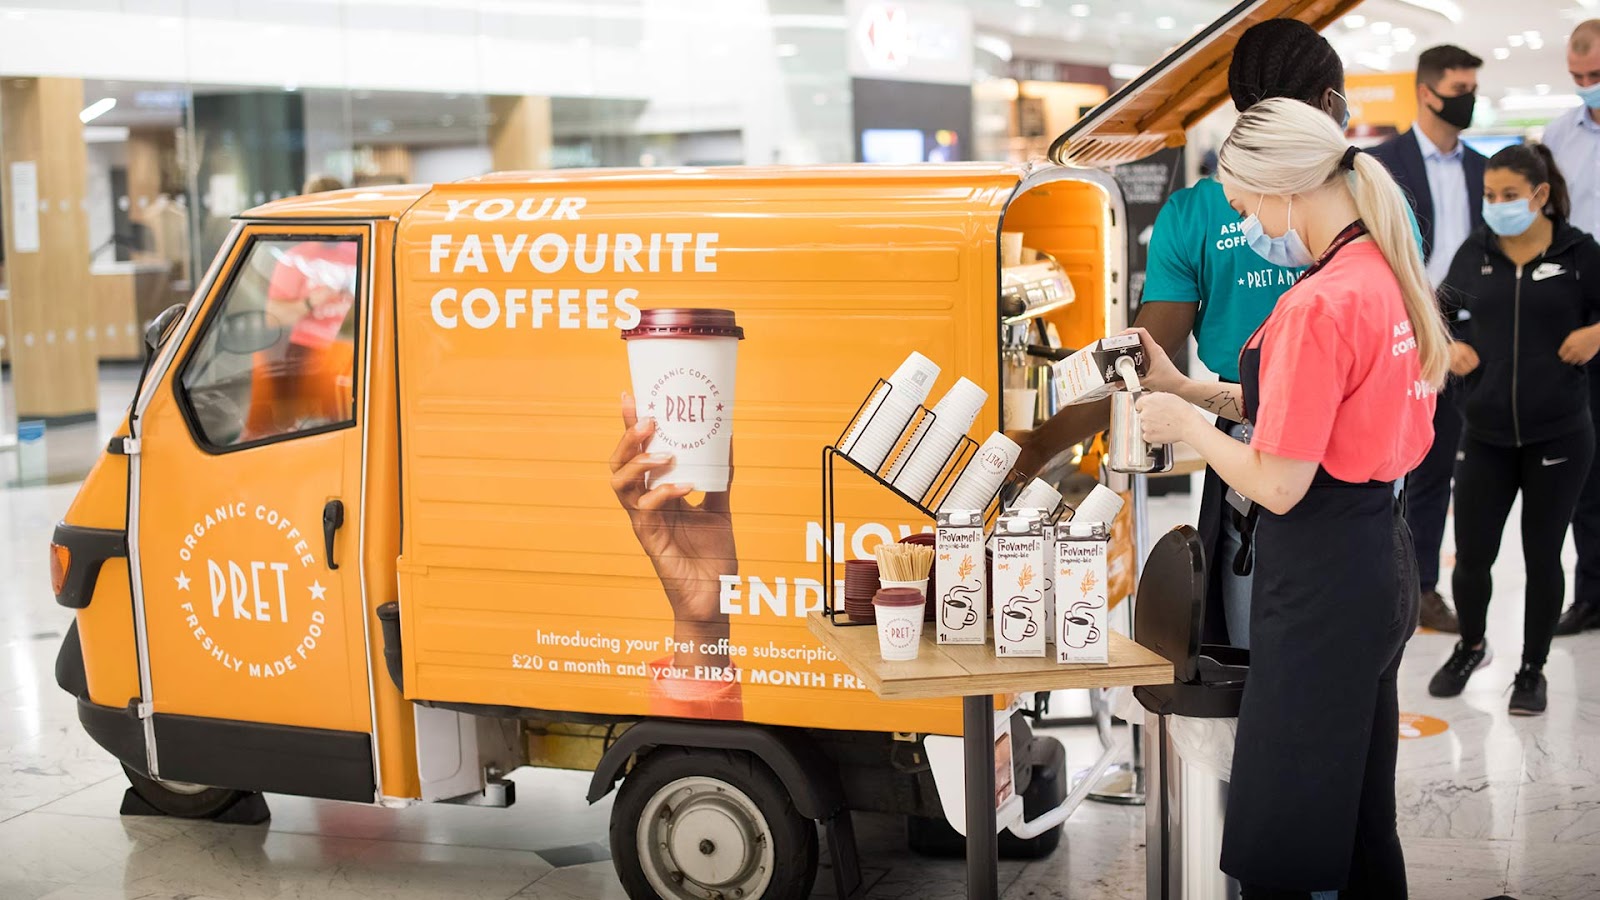 La furgoneta Piaggio de la marca Pret dispensa café para los clientes